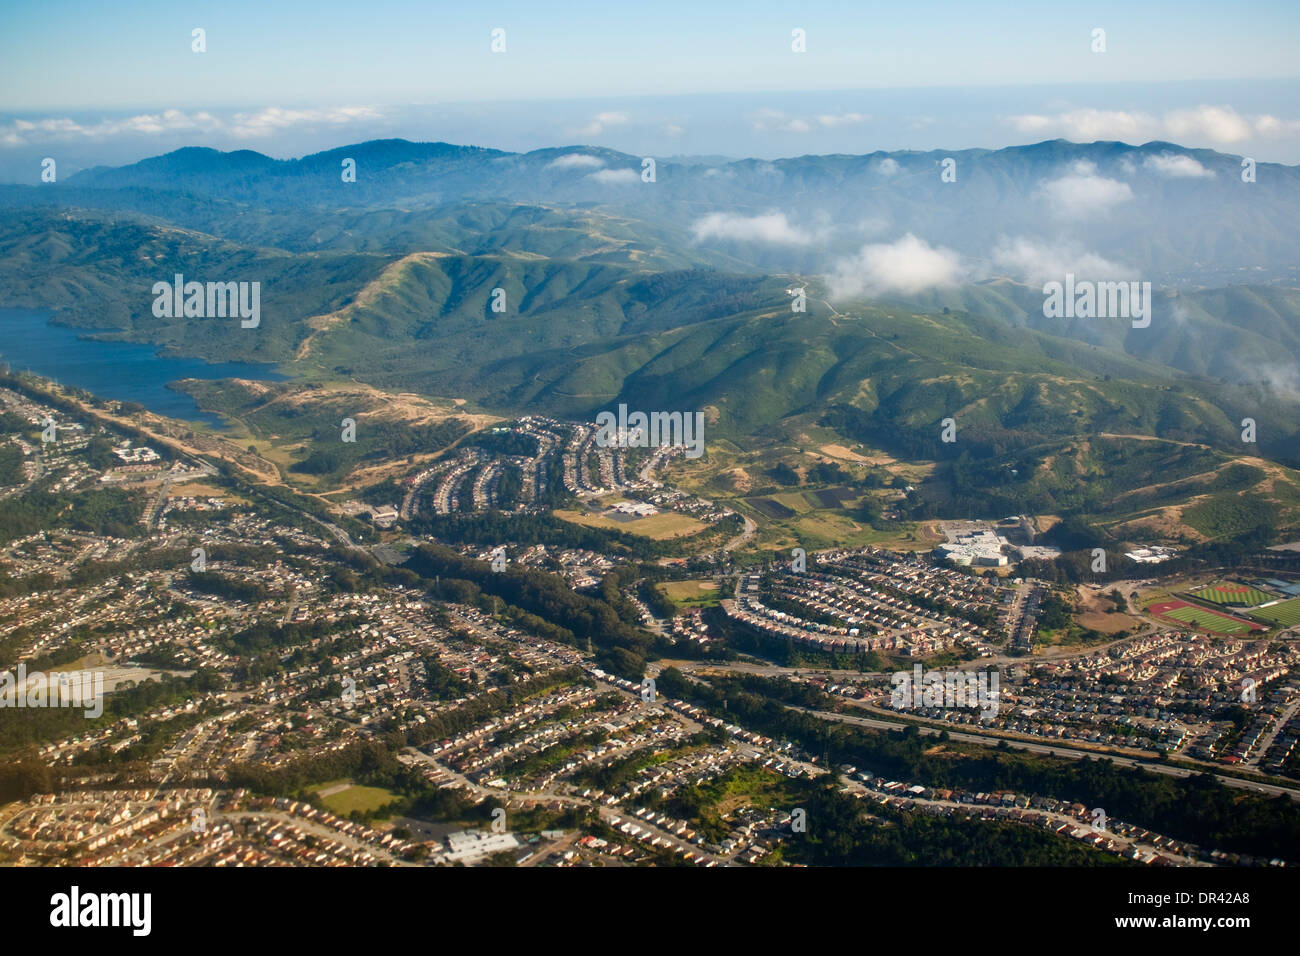 Plus d'antenne de la péninsule de San Francisco et le tremblement de terre de San Andreas problème, près de Daly City, Californie Banque D'Images